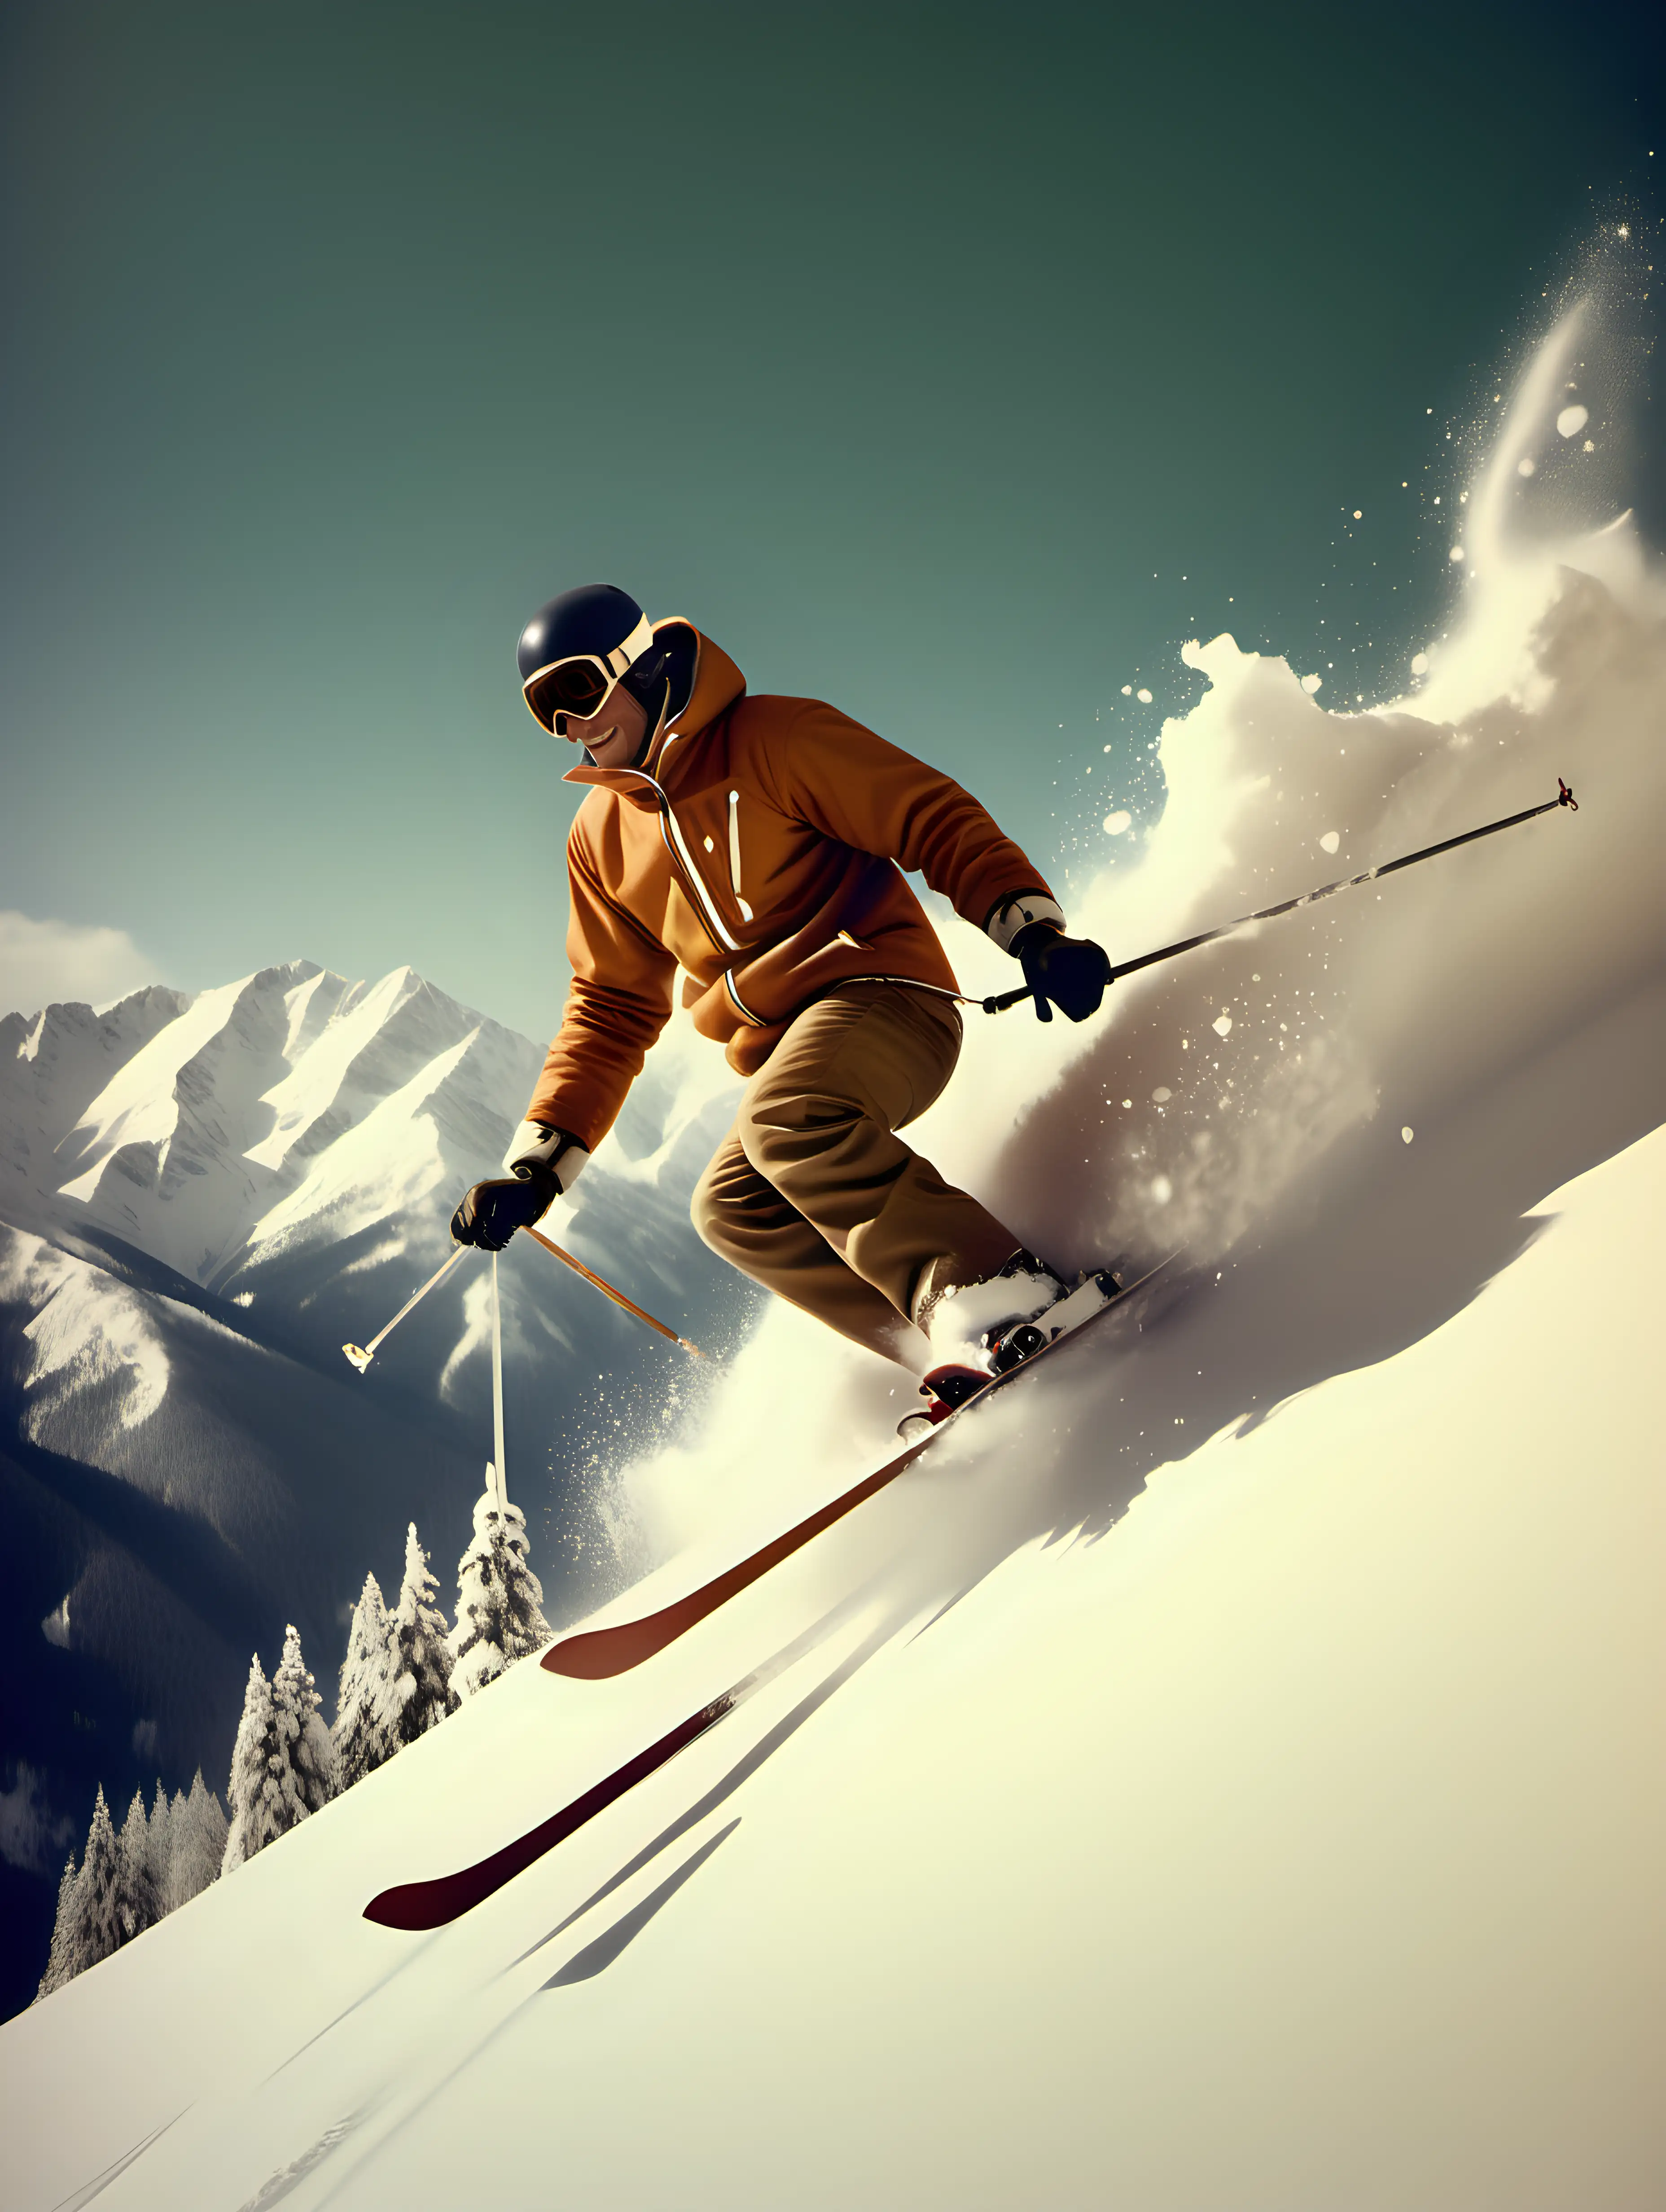 un skieur qui fait une chute en vol dans de la neige poudreuse, les montagnes escarpées enneigées.
ambiance vintage année 70
un baton dans chaque main